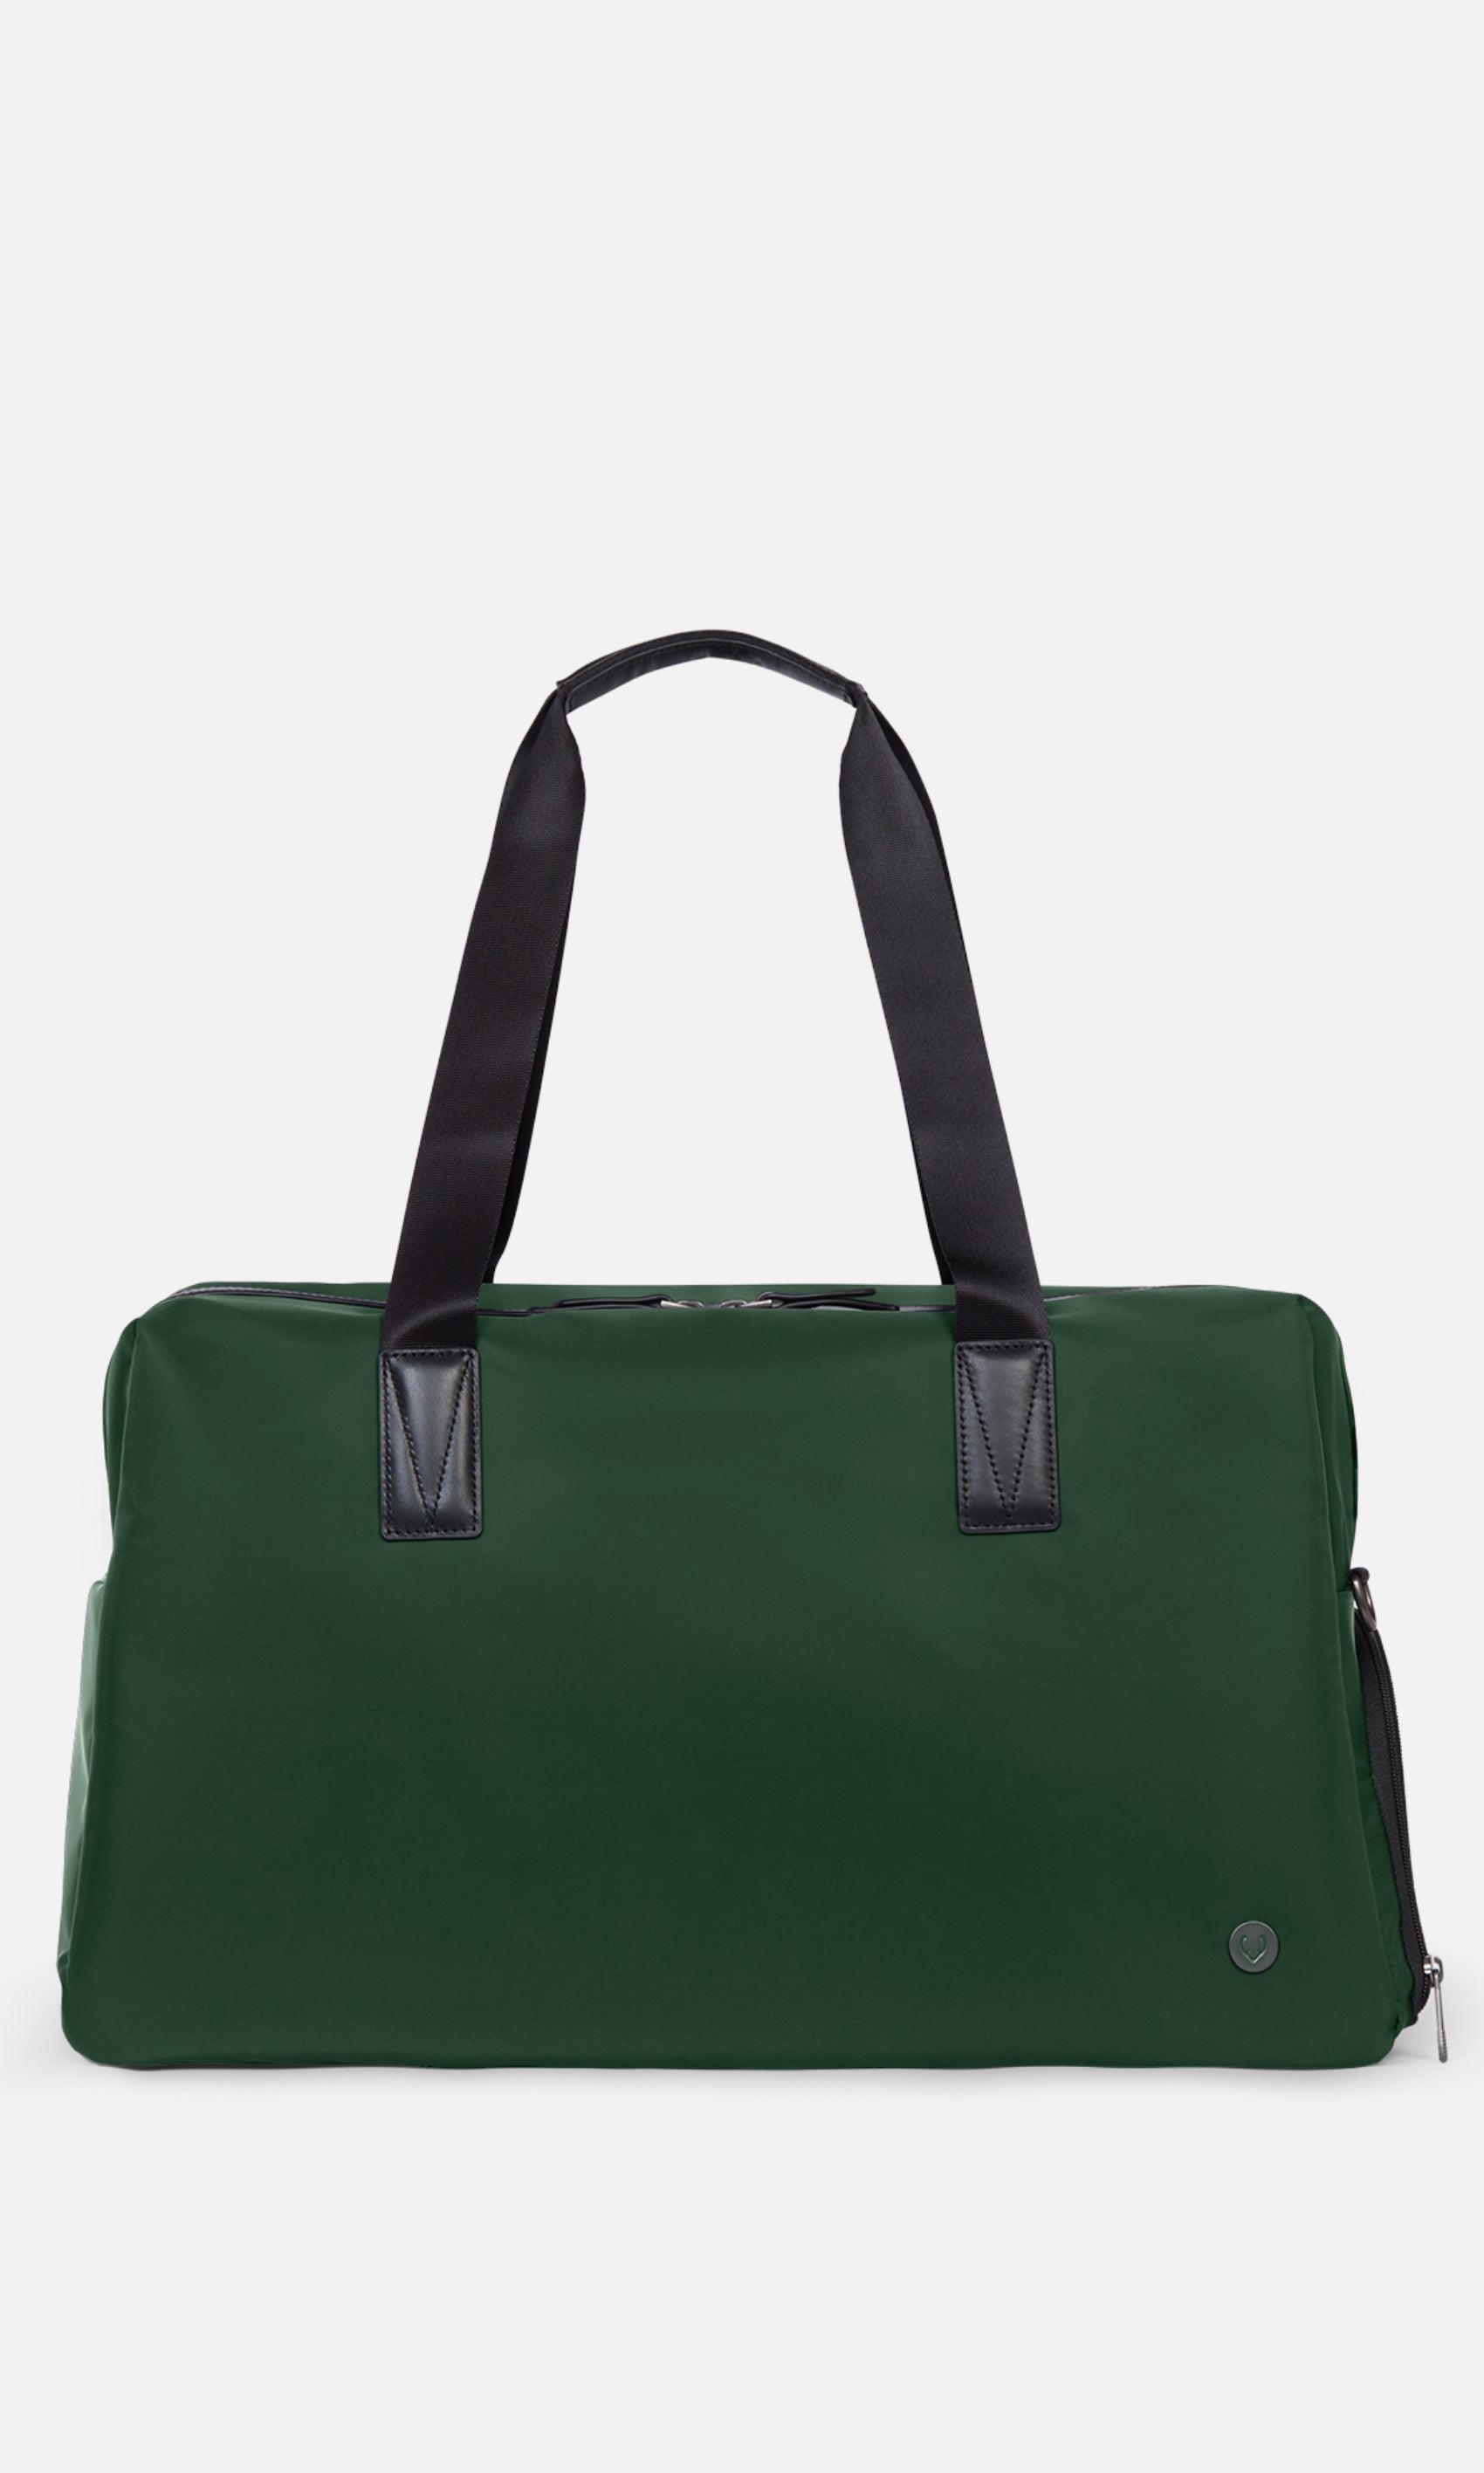 Antler Luggage -  Chelsea weekender in woodland green - Weekend bags Chelsea Weekend Bag Green | Travel Bags | Antler UK